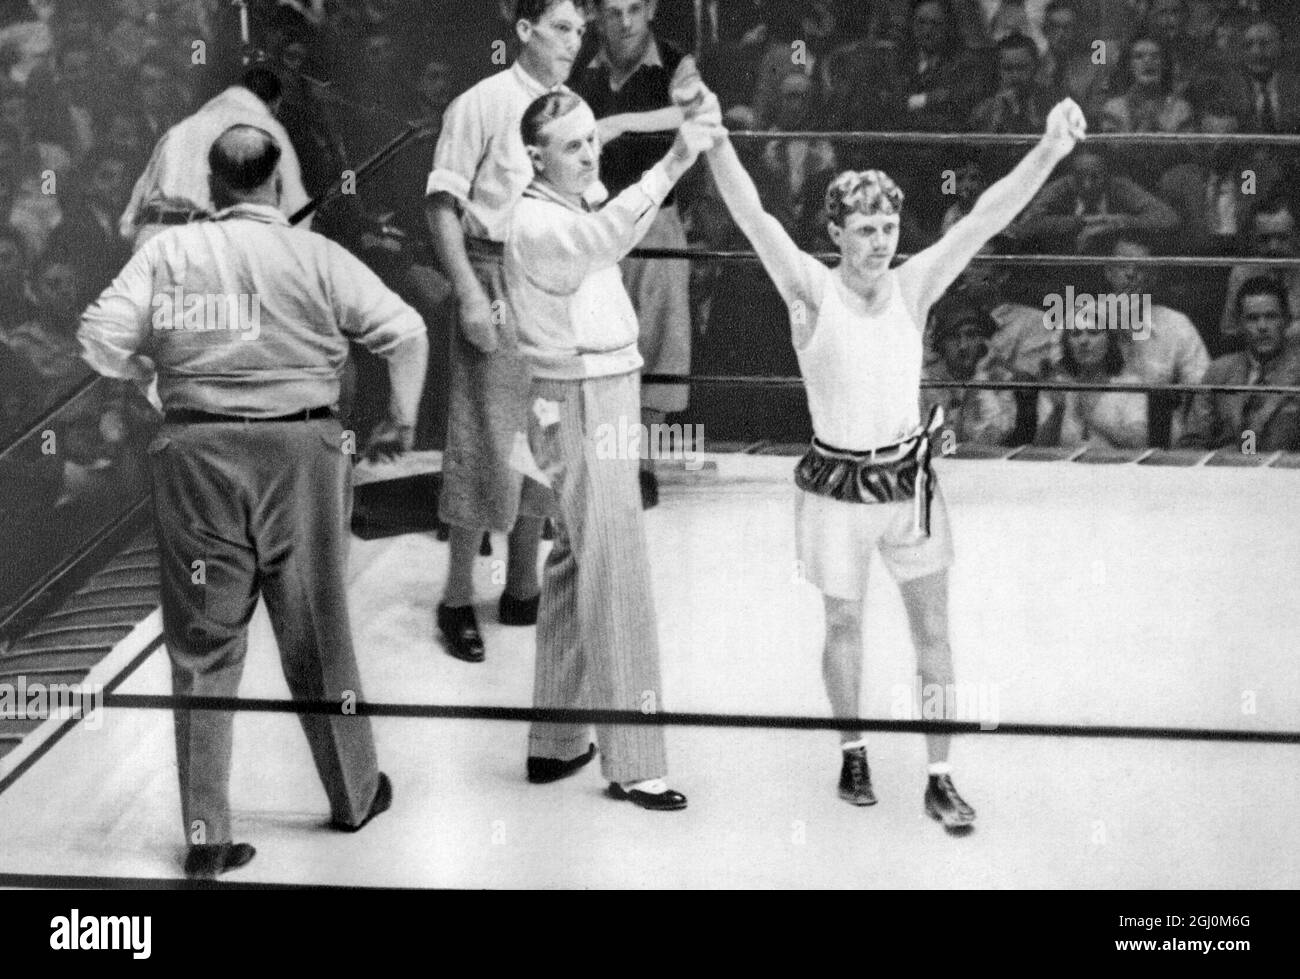 Boxers Middleweight 1932 Olympic Games, Los Angeles, USA, 1932 Summer Olympics Gerrman Boxer Werner Spannagel nel 1932 è stato eliminato nei quarti di finale della classe flyweight dopo aver perso la sua lotta per il prossimo medaglia di bronzo Louis Salica Foto Stock